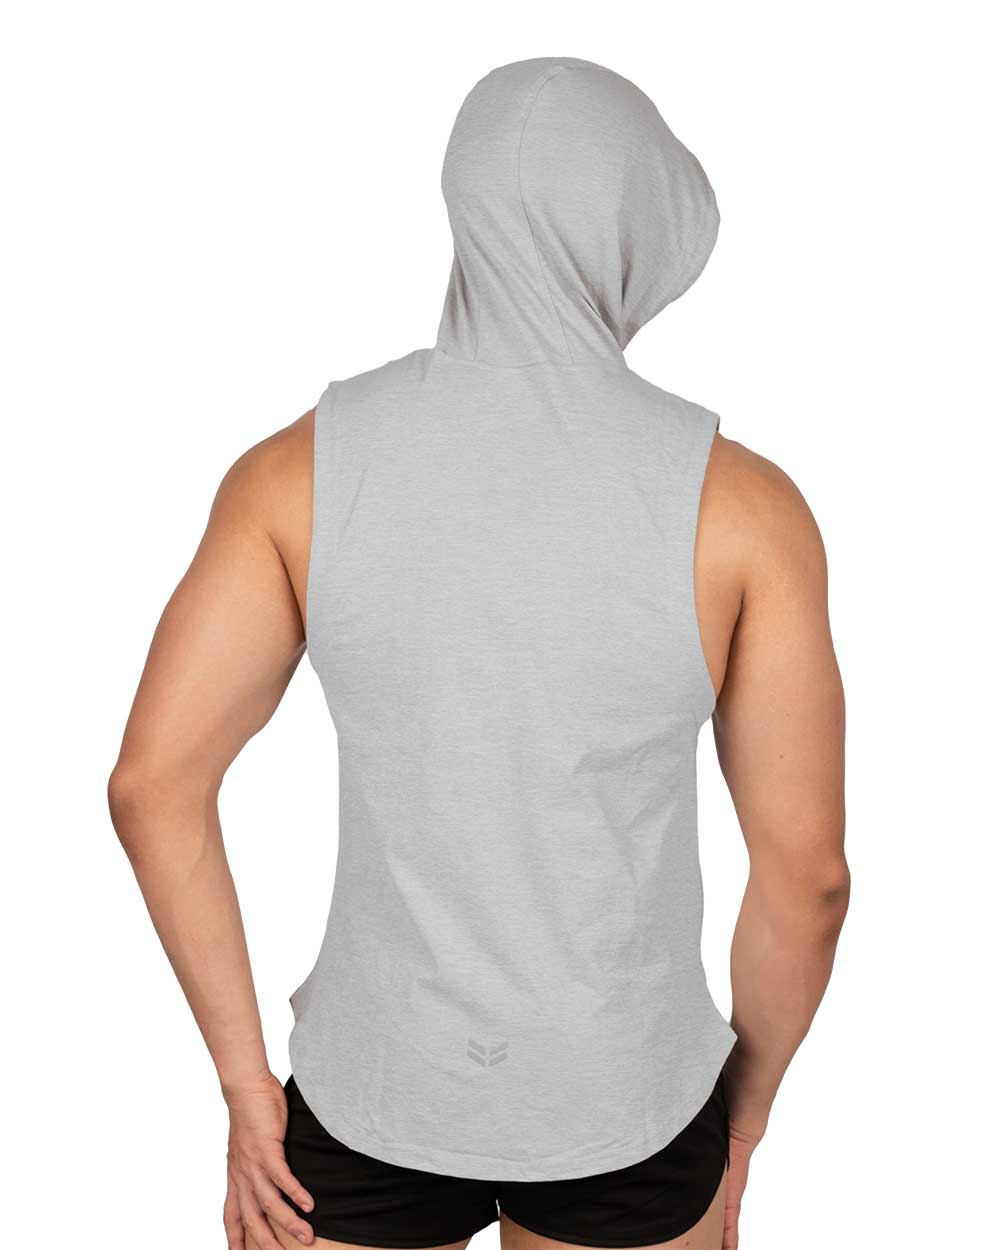 Hoody Mucle Vest - Grey [4607]